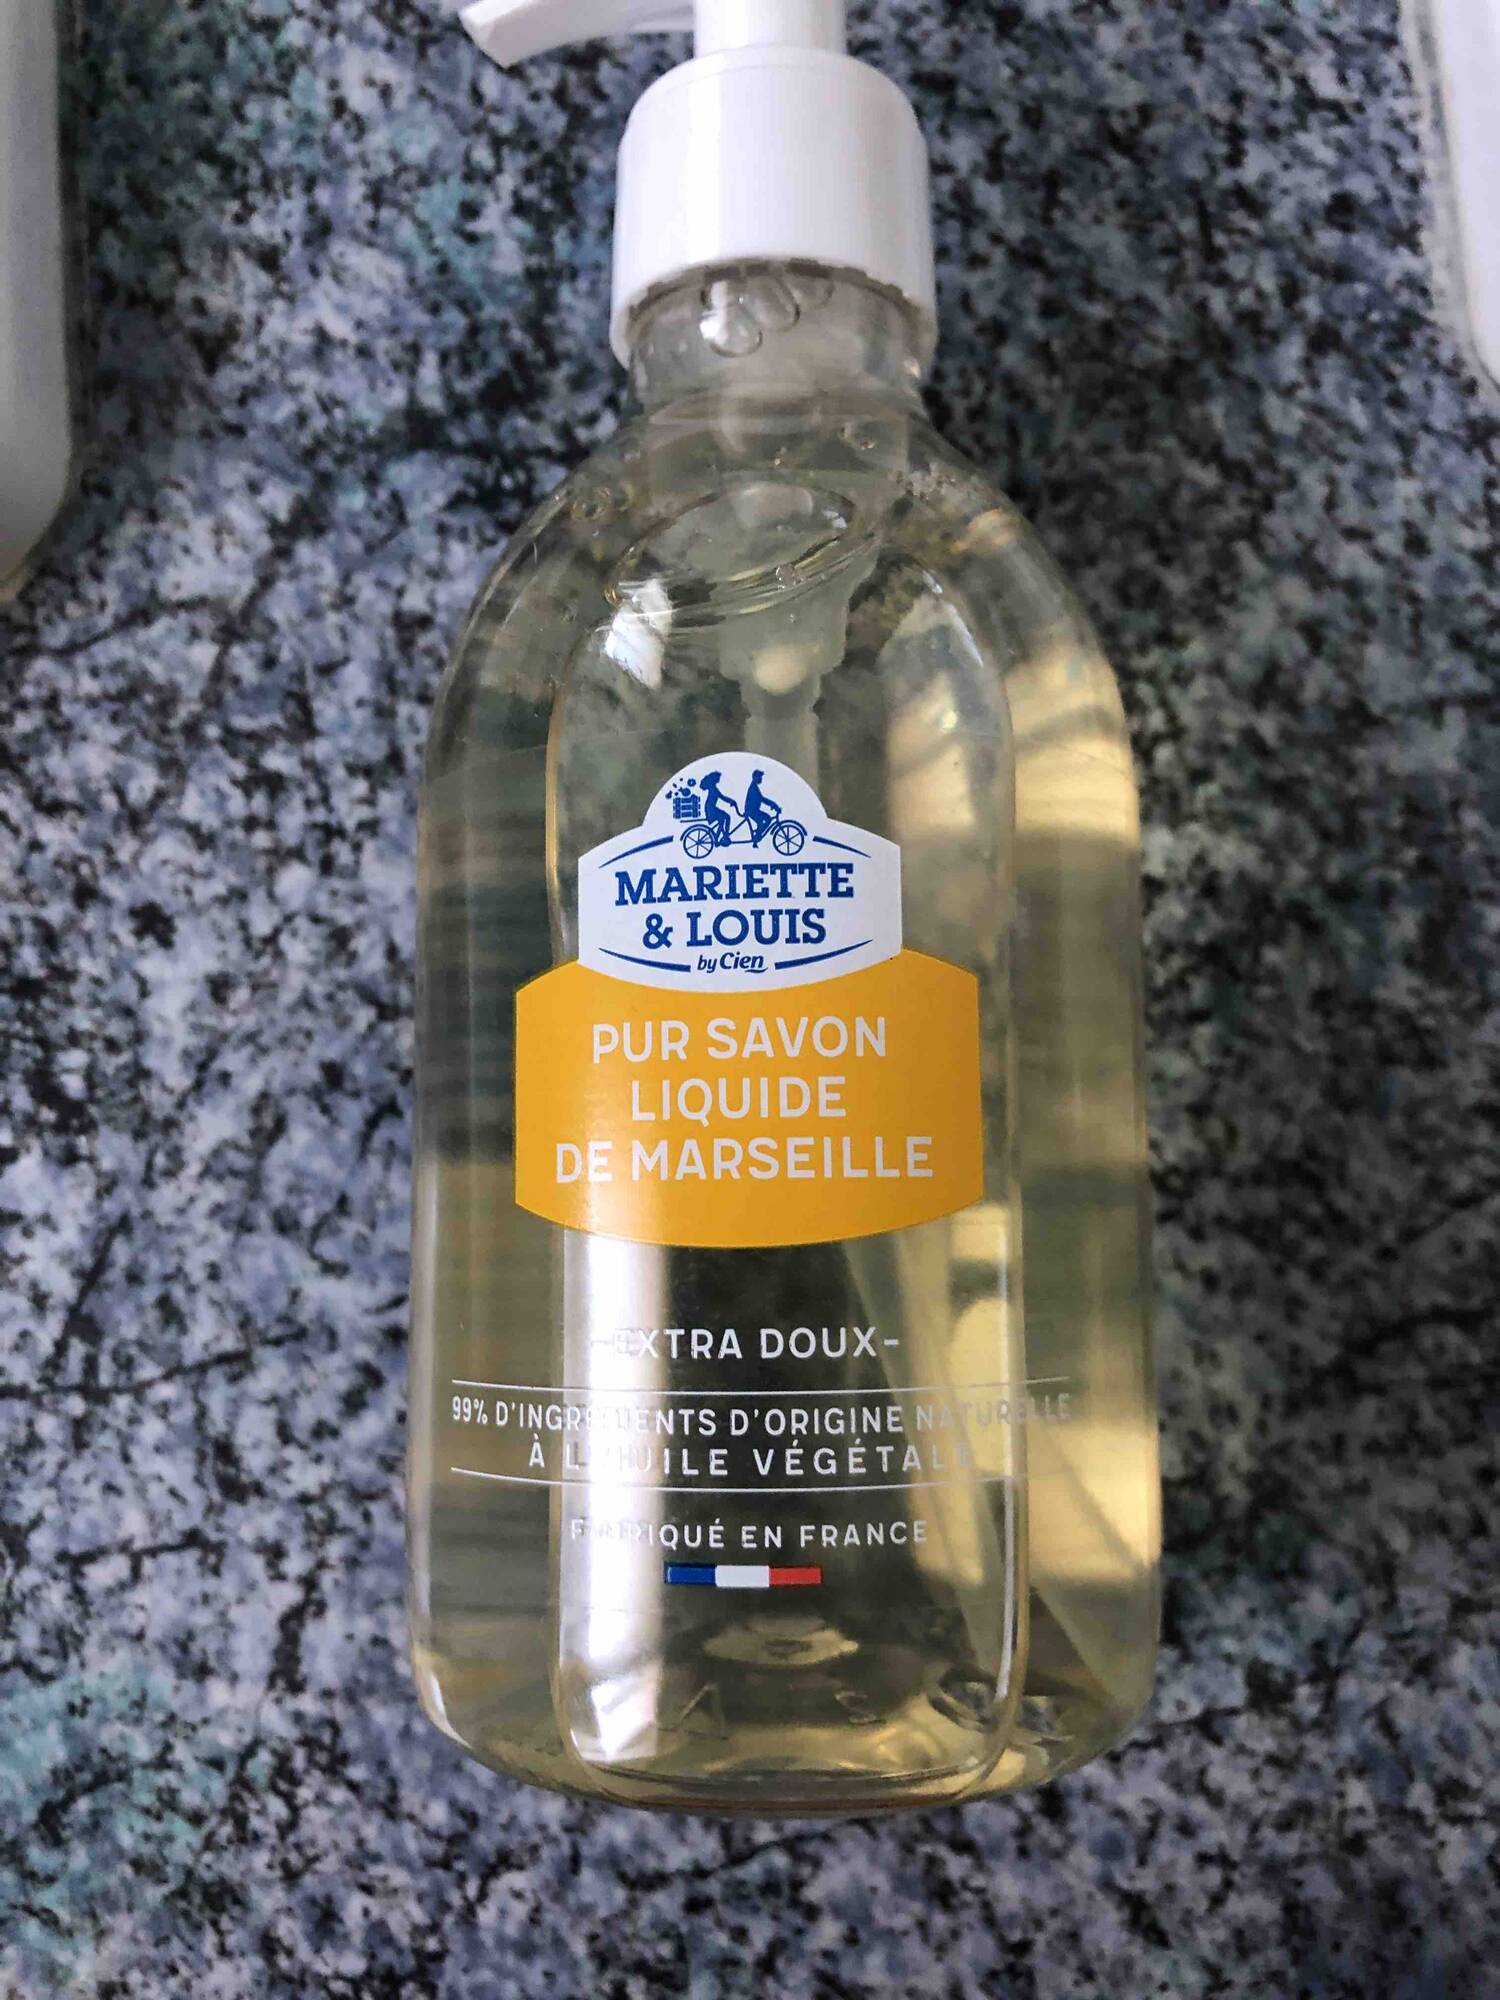 MARIETTE & LOUIS - Pur savon liquide de Marseille extra doux